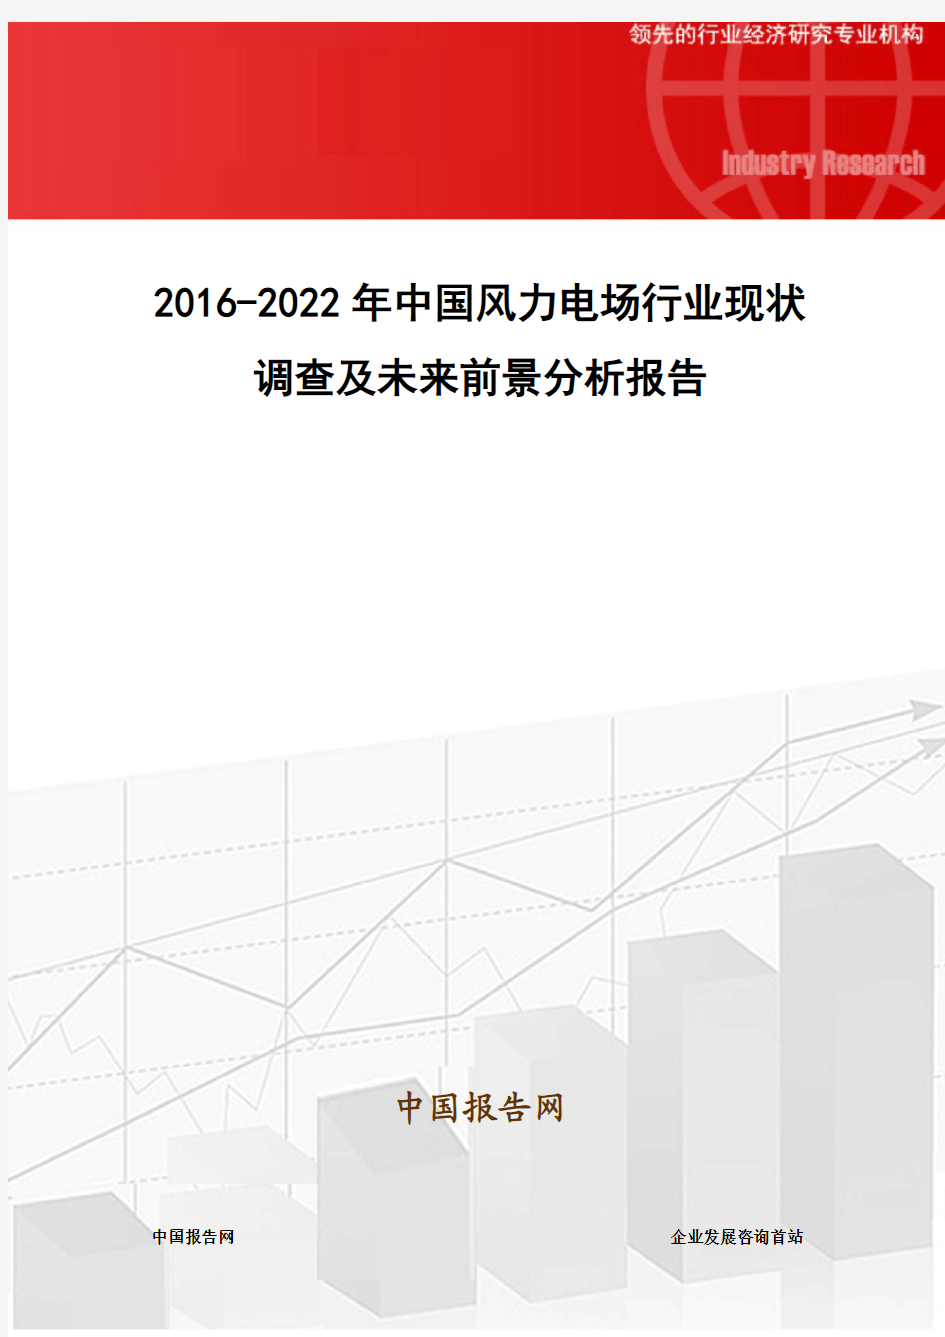 2016-2022年中国风力电场行业现状调查及未来前景分析报告